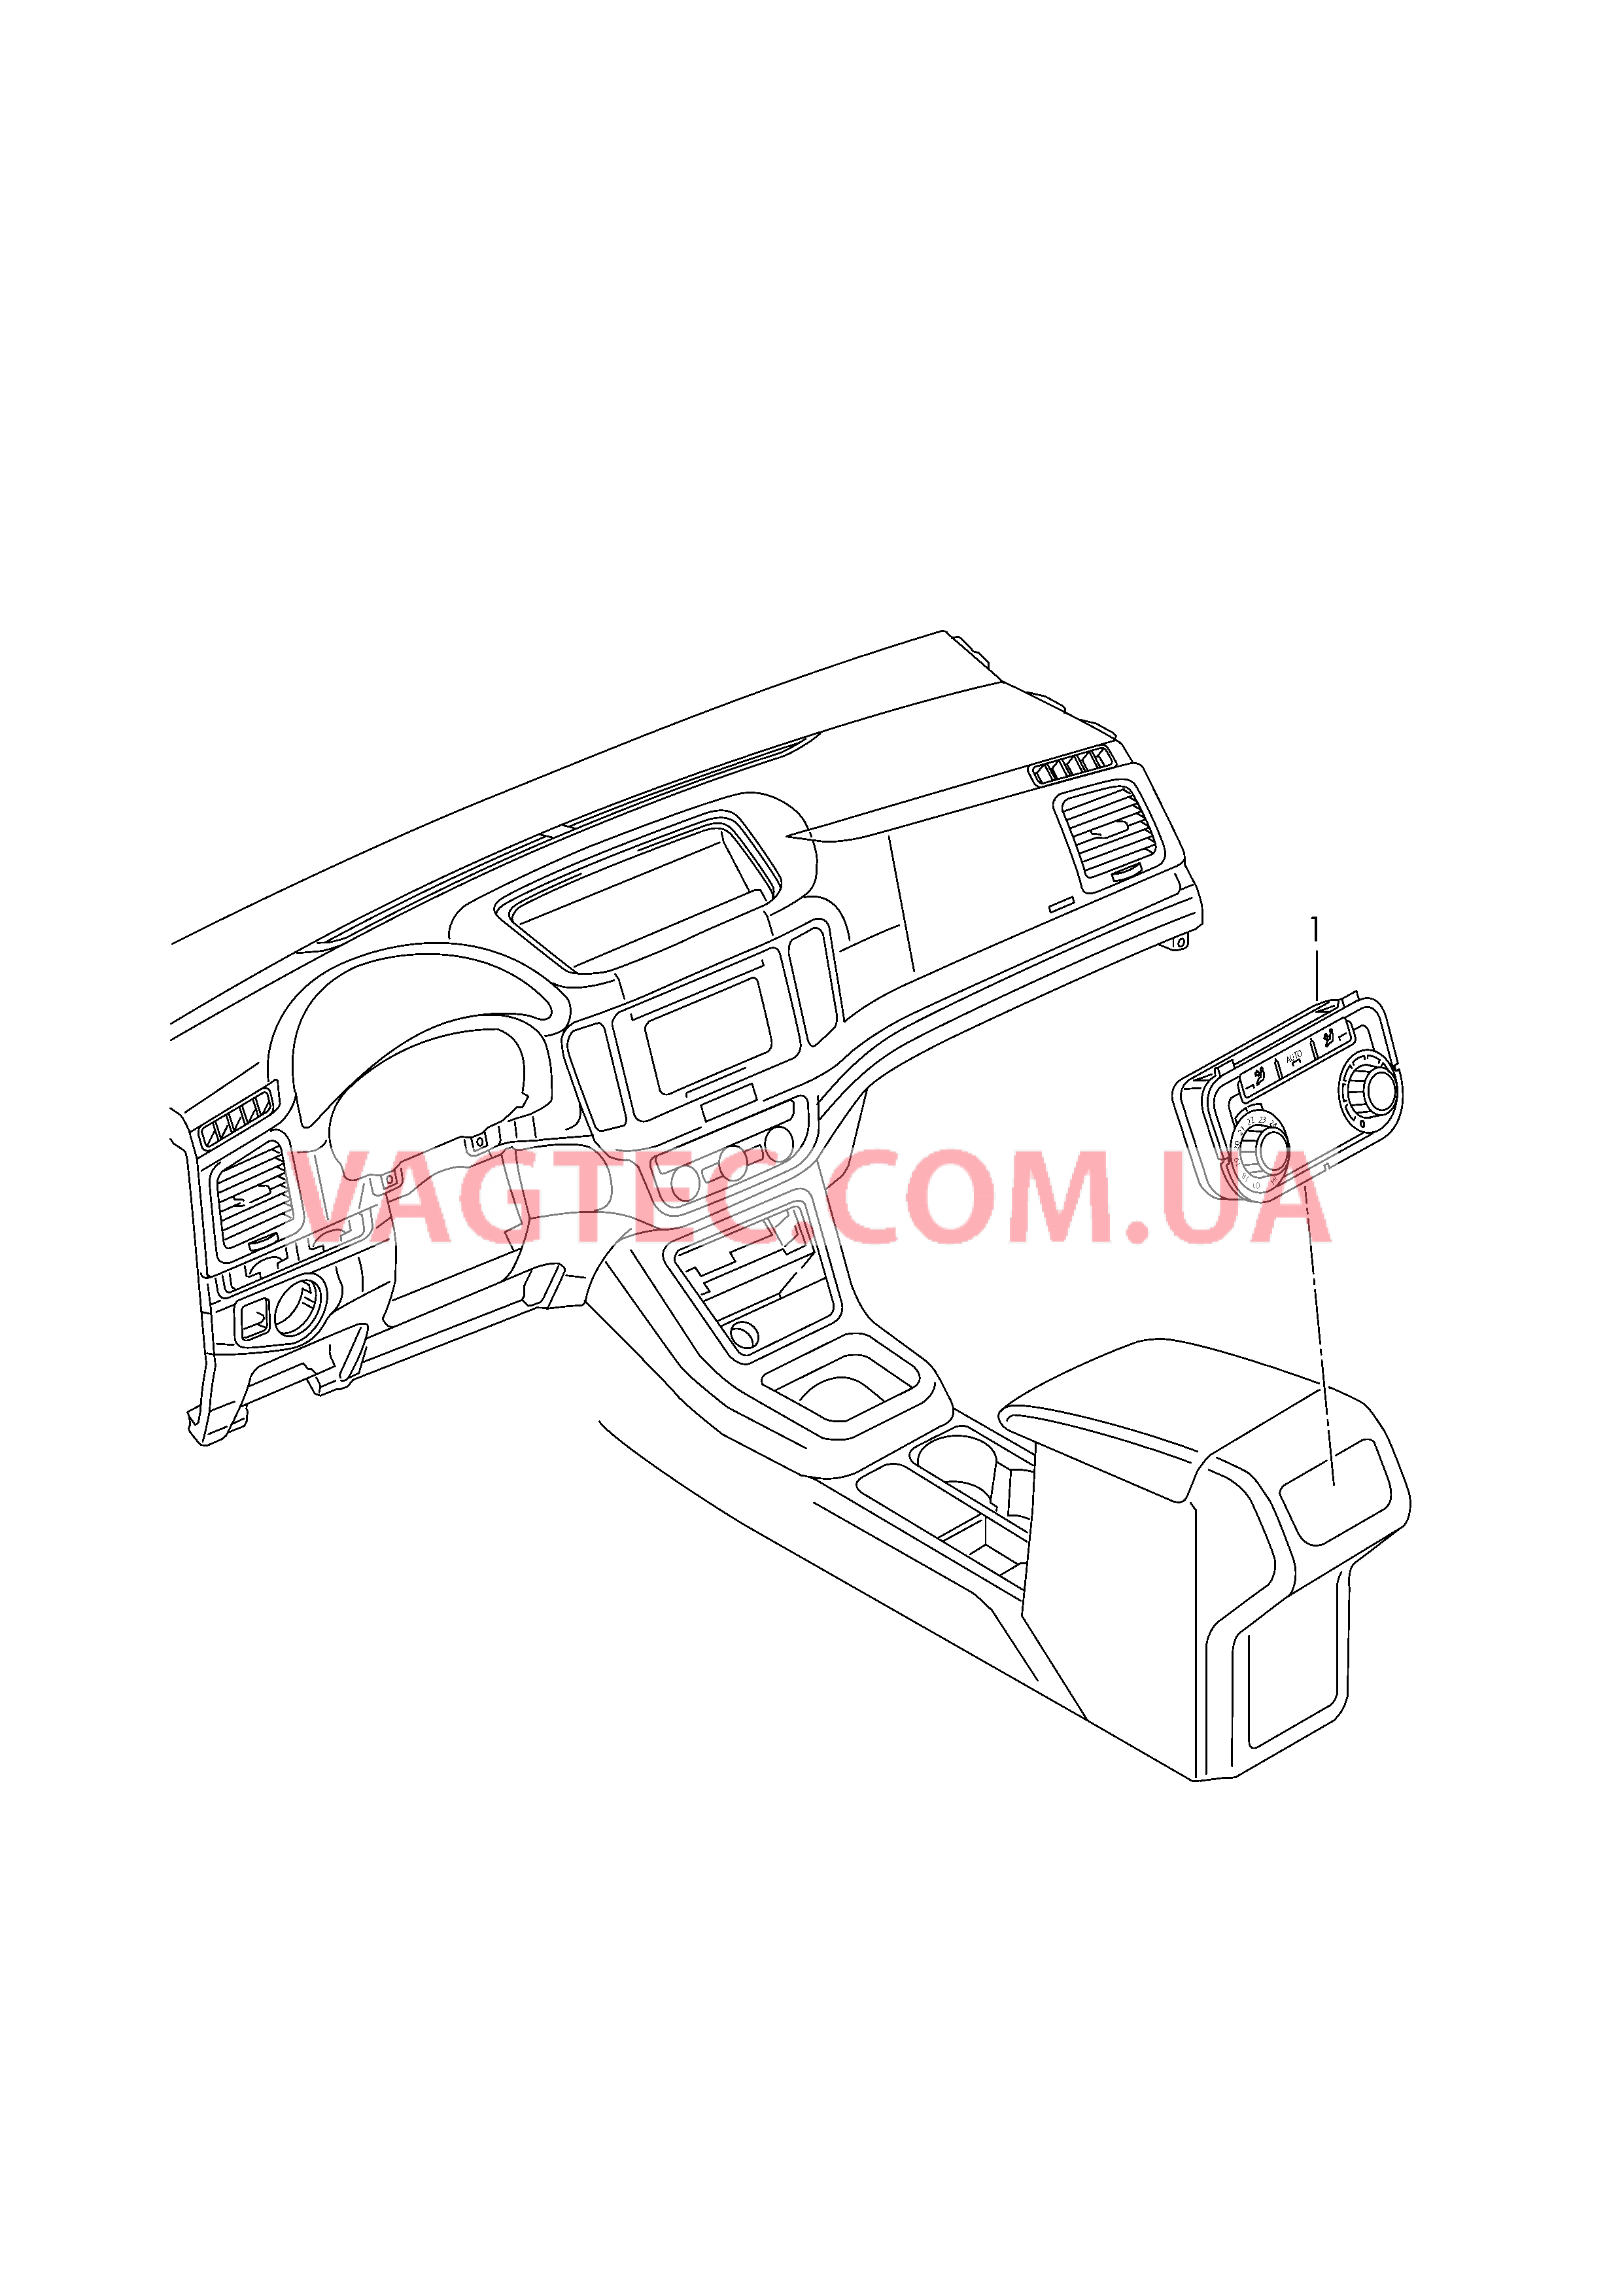 БУ климатической установки Панель управления и индикации БУ климатической установки с электронным управлением   Центральная консоль  для SEAT Alhambra 2017